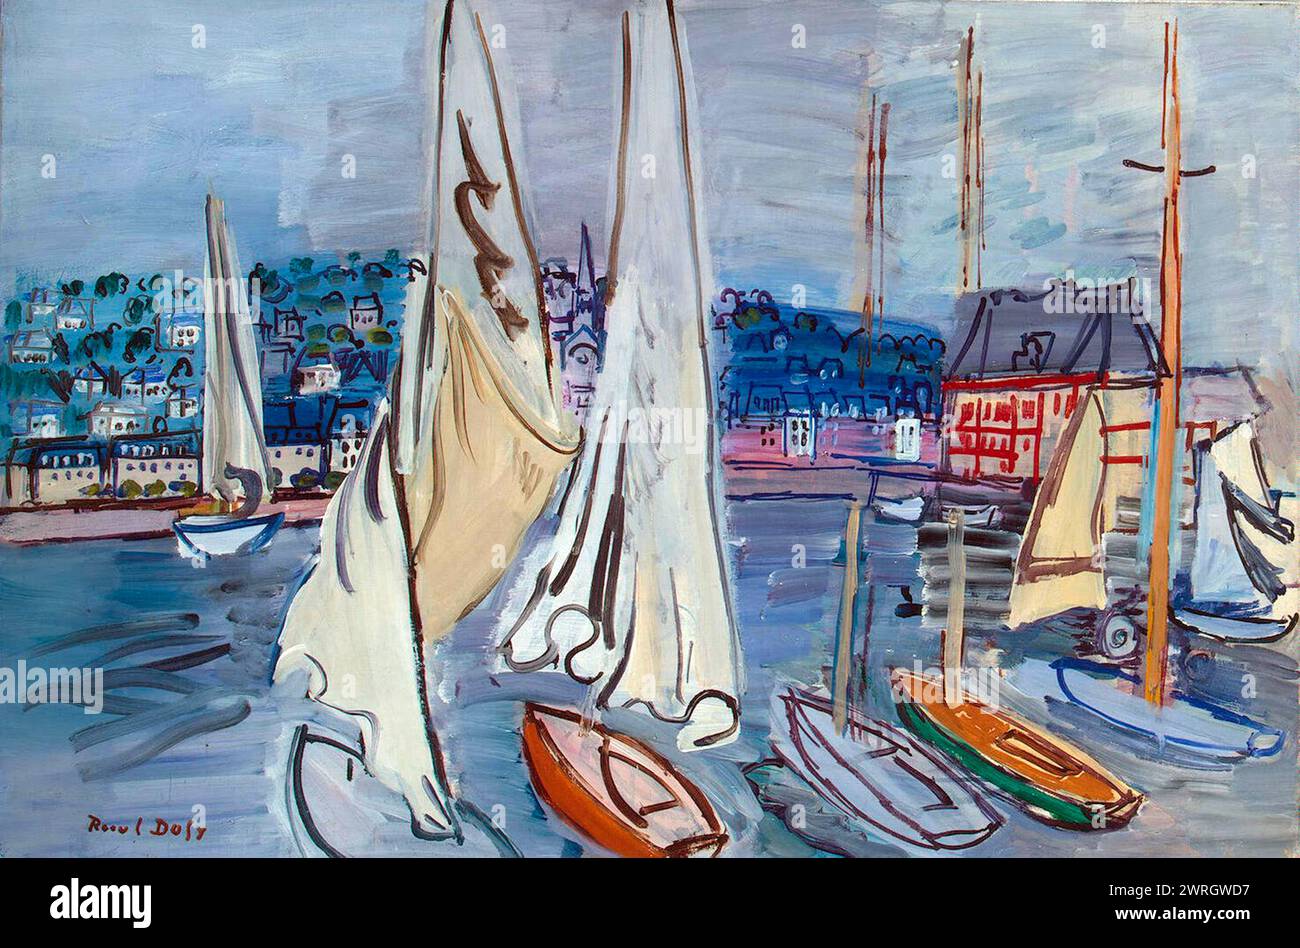 Segelboote in Trouville', 1936. Dufy, Raoul (1877-1953). Gefunden in der Sammlung der Staatlichen Eremitage, St. Petersburg. Stockfoto